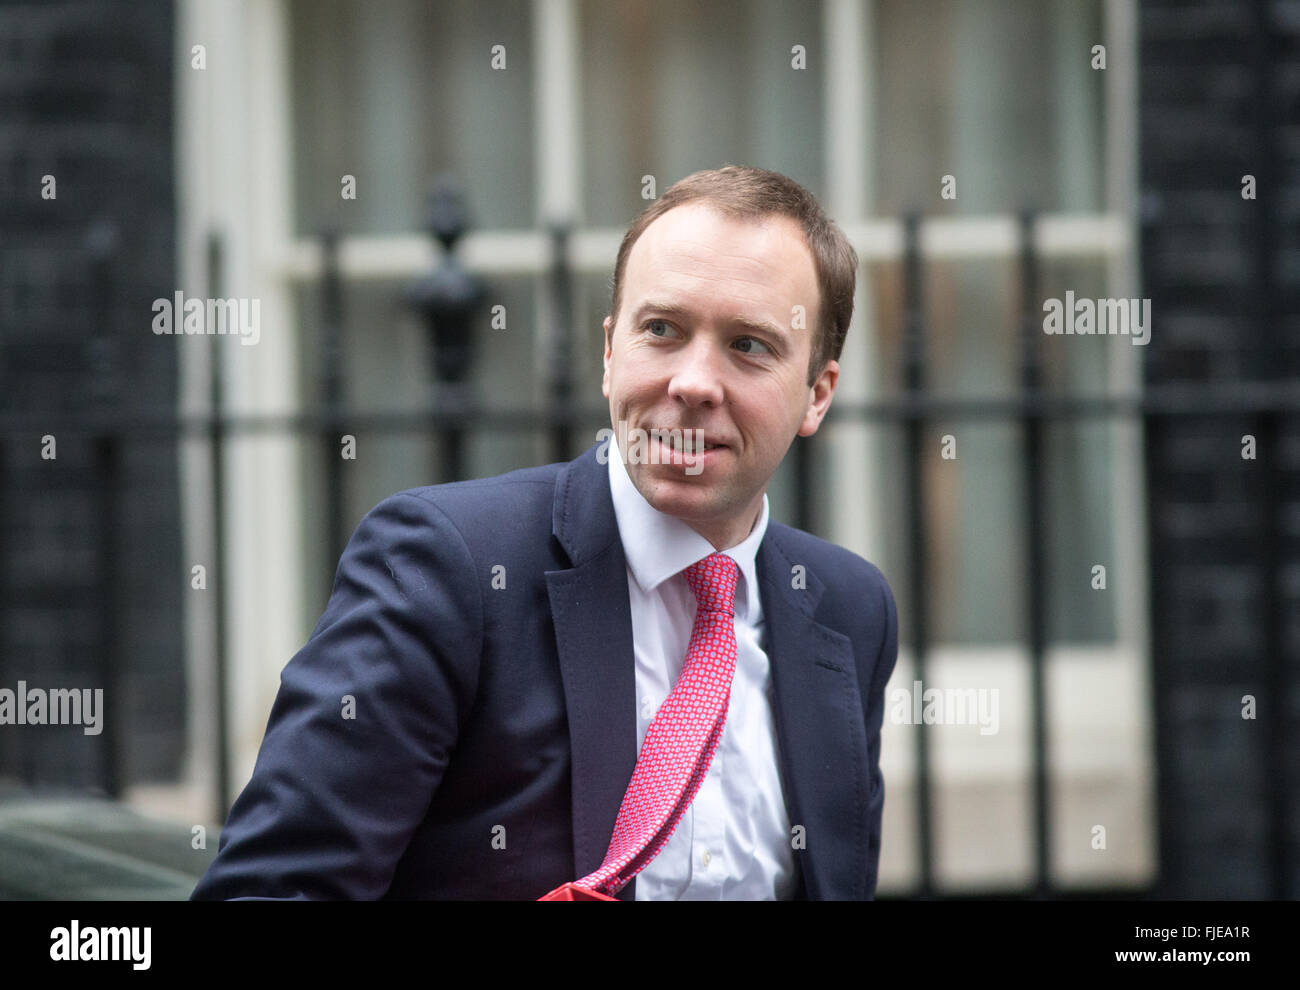 Matthew Hancock, Minister für das Cabinet Office und Paymaster General, kommt in der Nummer 10 Downing Street für eine Kabinettssitzung Stockfoto